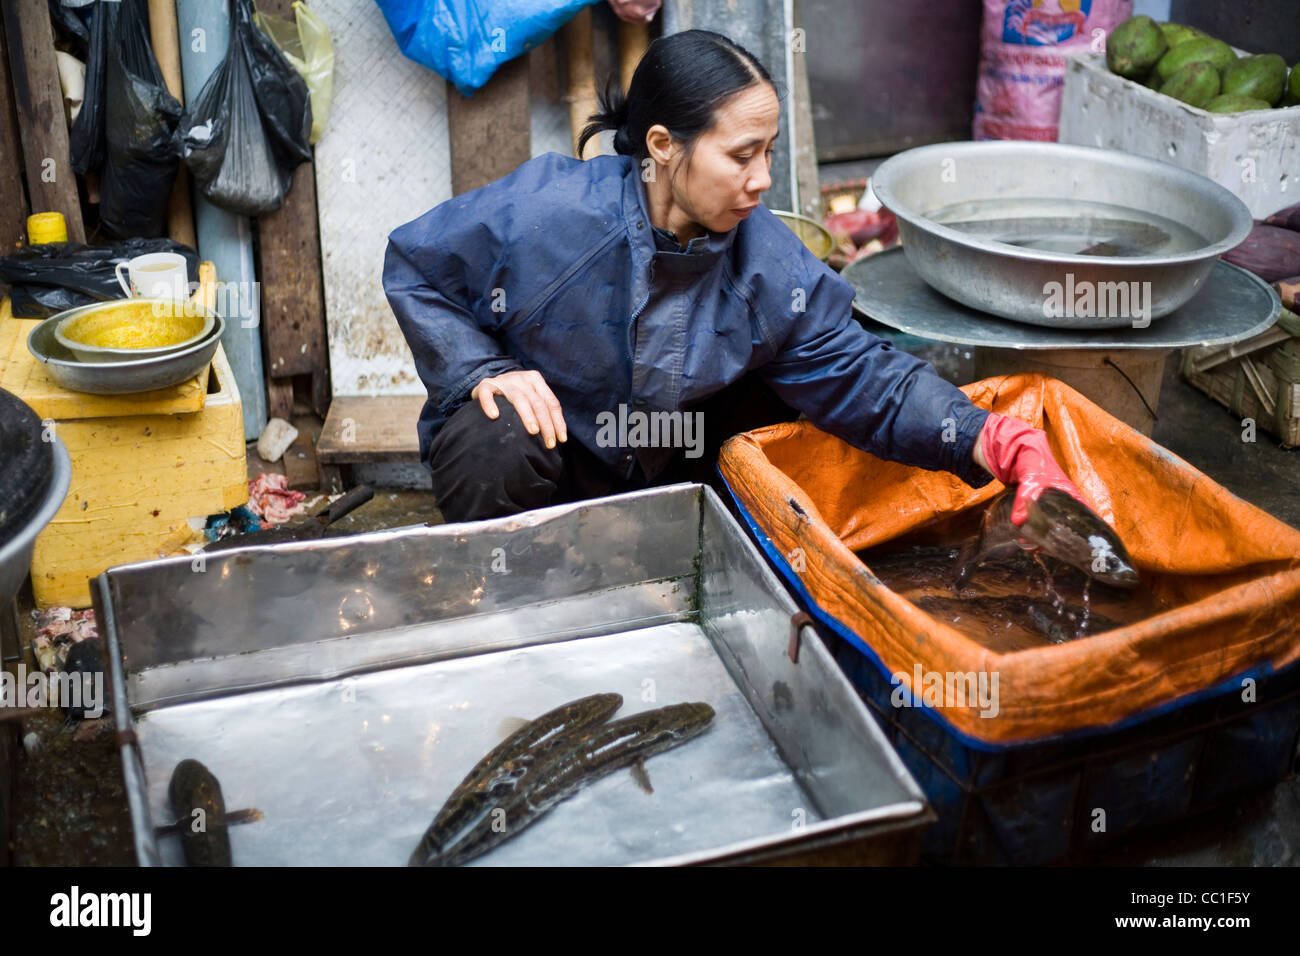 Una donna preleva un pesce in una vasca di acqua sul suo stallo nella Cau Go Market, Hanoi, Vietnam Foto Stock